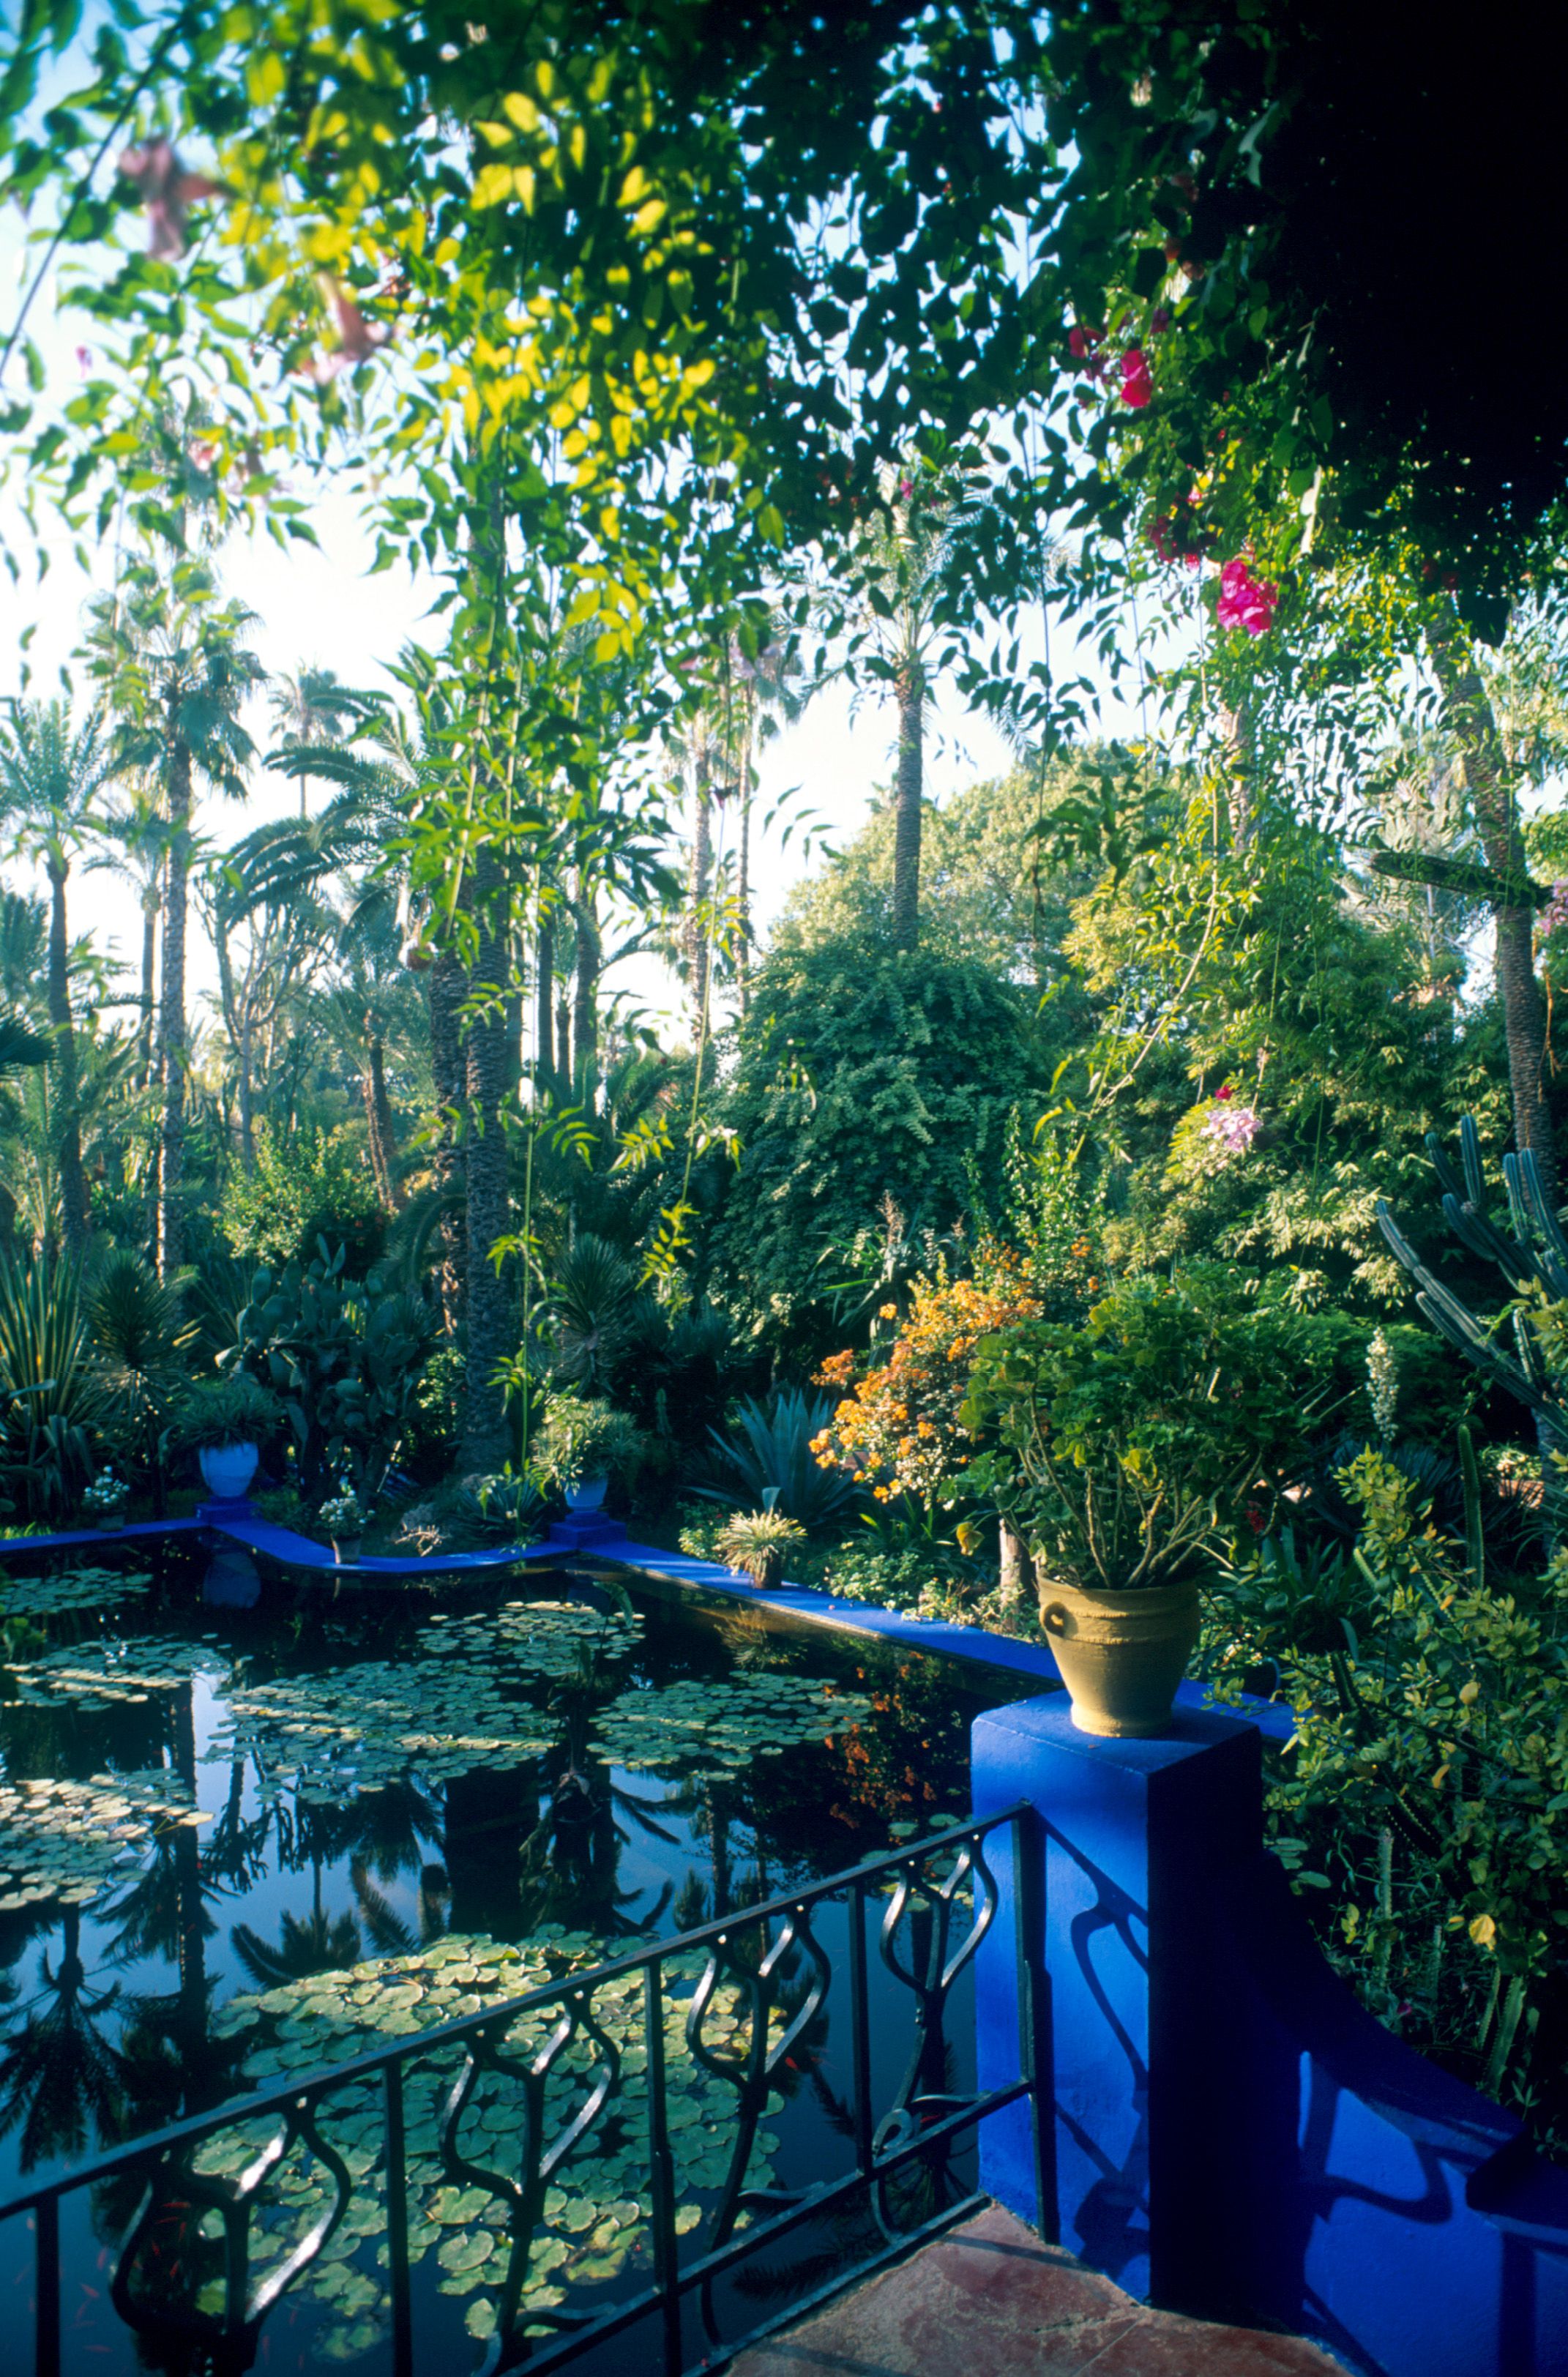 イヴ・サンローランが愛したモロッコのマジョレル庭園を造園家・齊藤 